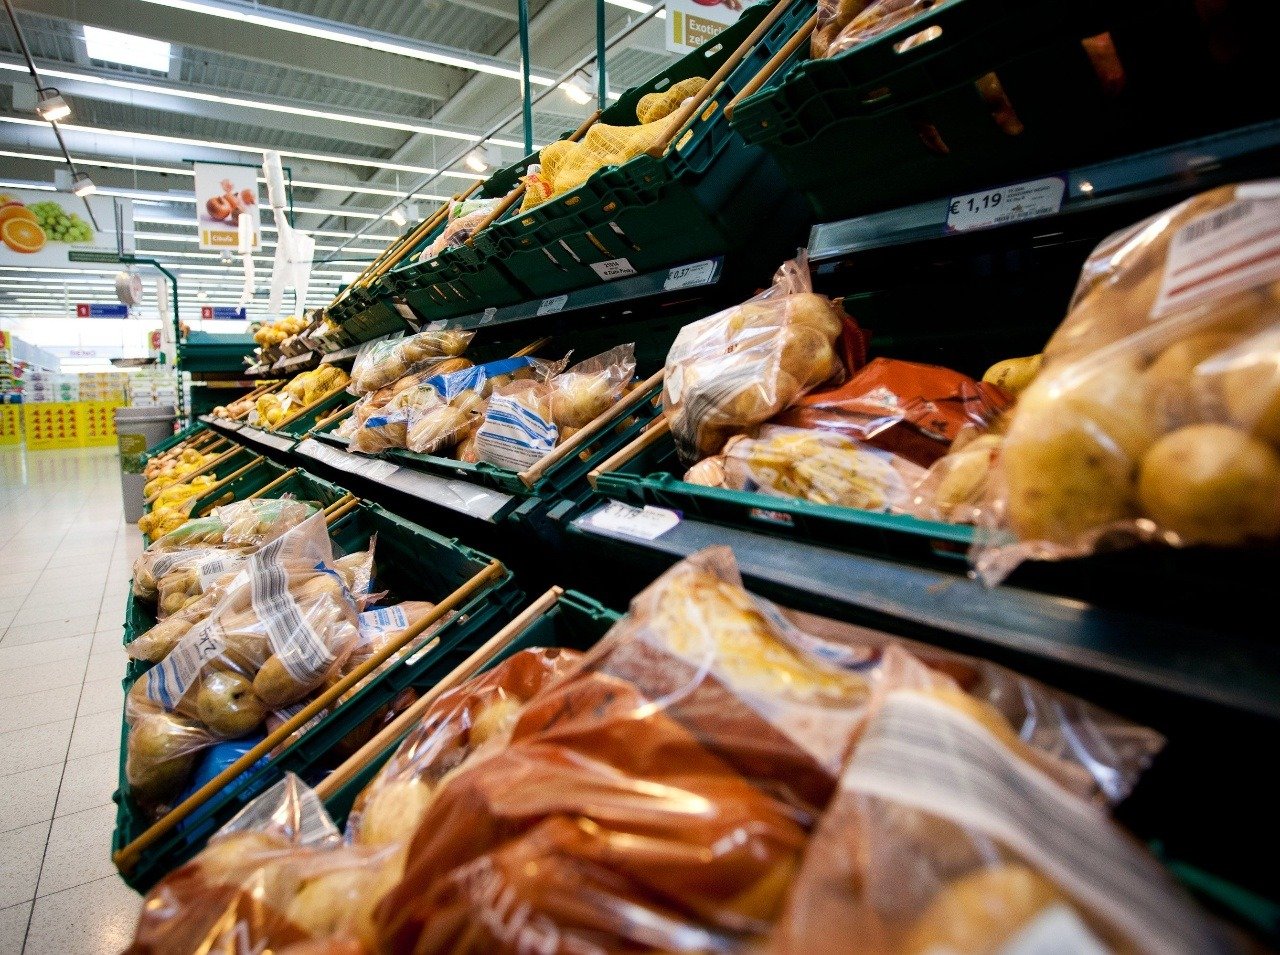 Obchody ponúkajú množstvo kvalitných i nekvalitných potravín s rôznymi cenami.